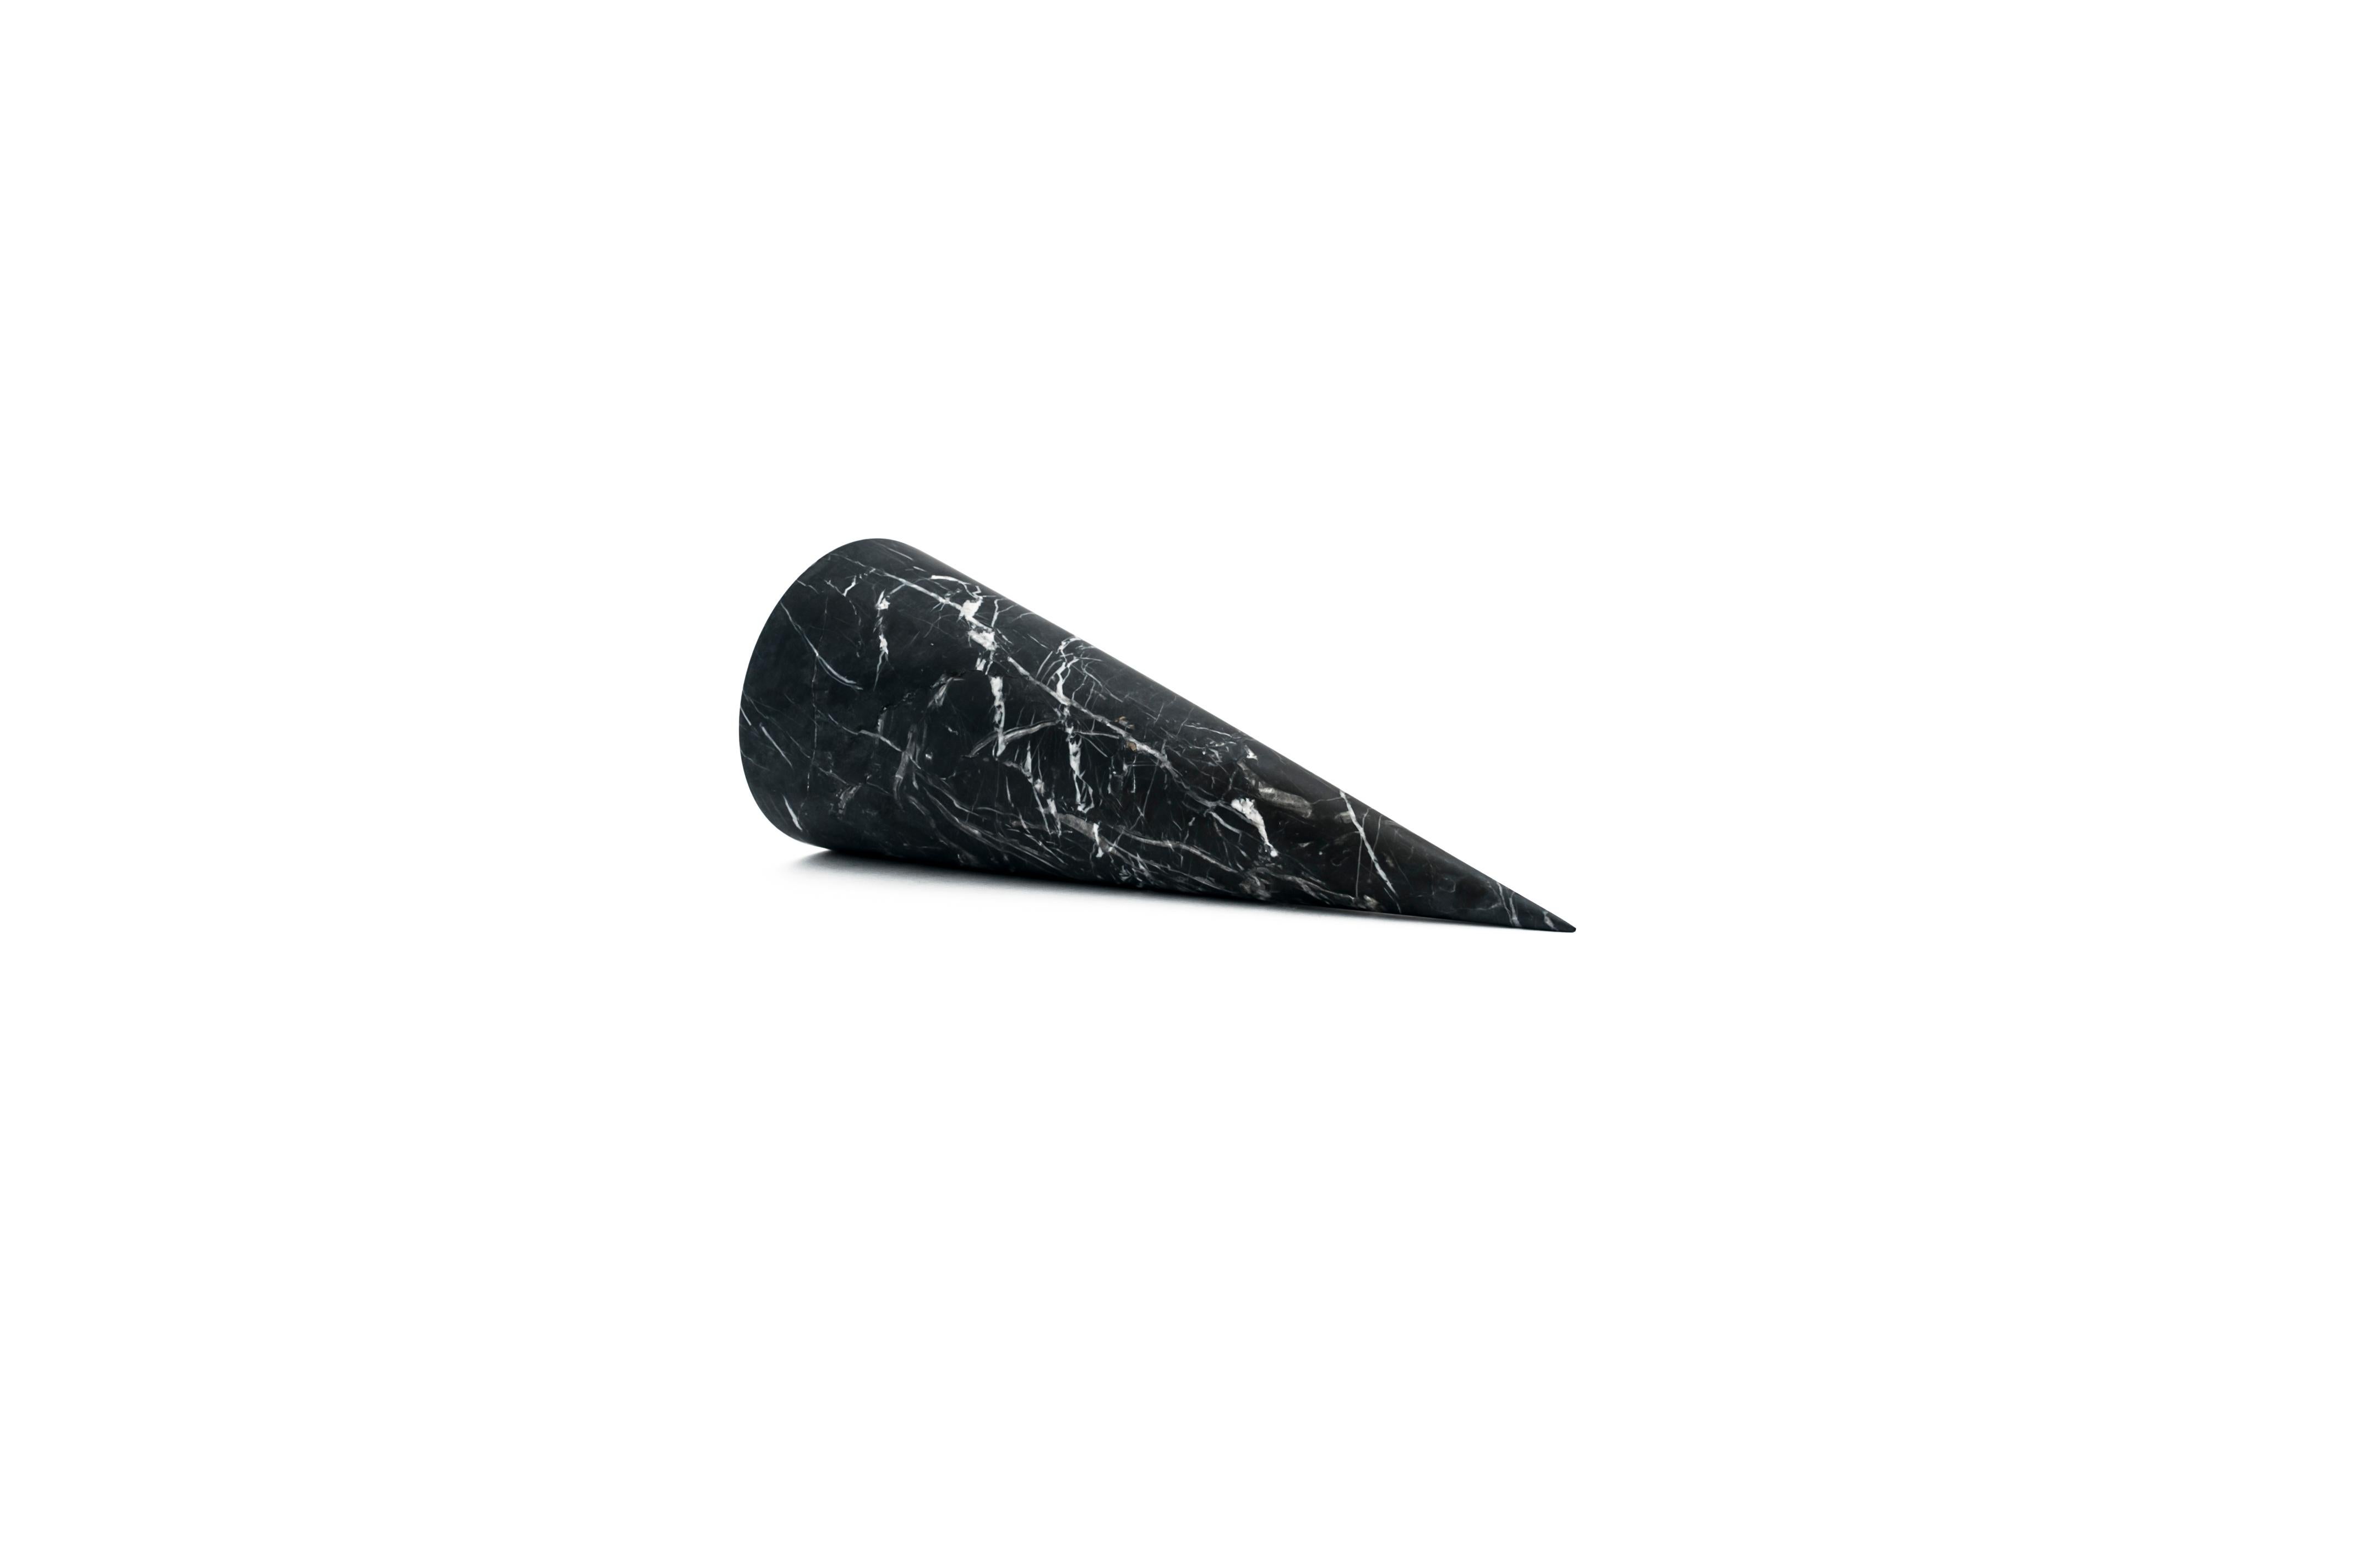 Ein dekorativer großer Kegel aus schwarzem Marquina-Marmor. Jedes Stück ist ein Unikat (jeder Marmorblock hat eine andere Maserung und Schattierung) und wird von italienischen Handwerkern, die seit Generationen auf die Verarbeitung von Marmor